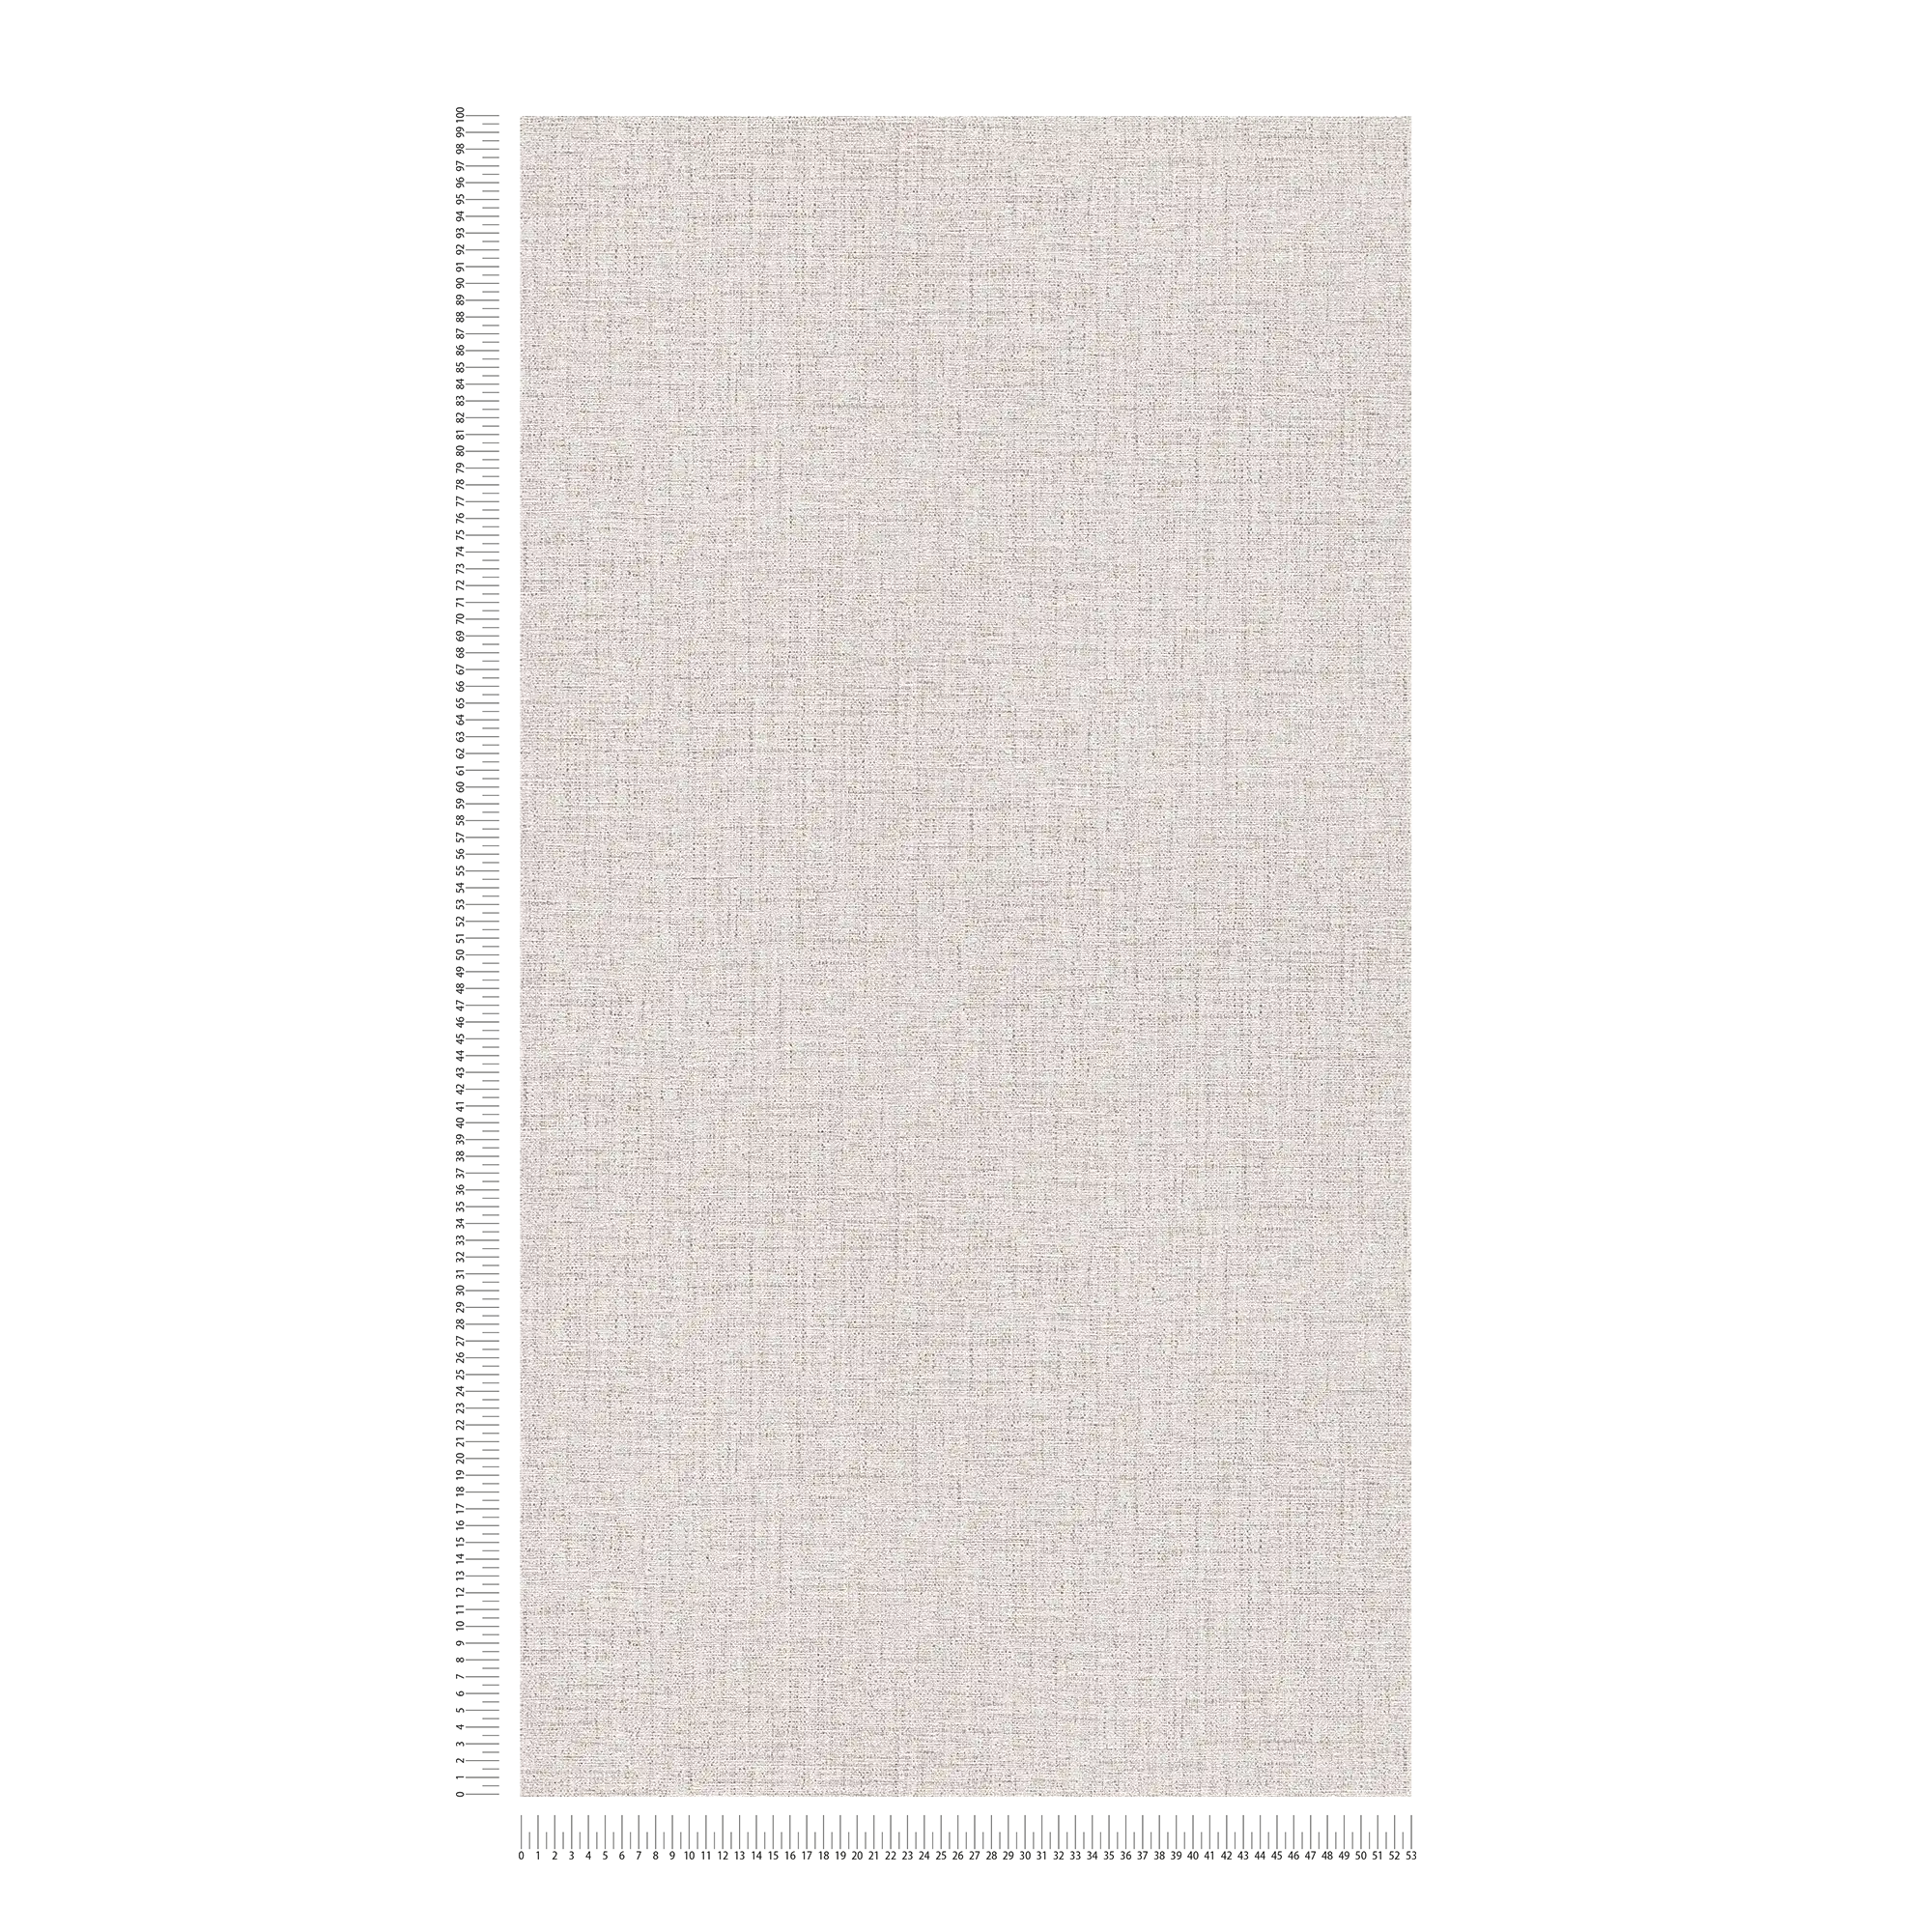             Carta da parati in tessuto non tessuto beige con aspetto tessile e design della struttura
        